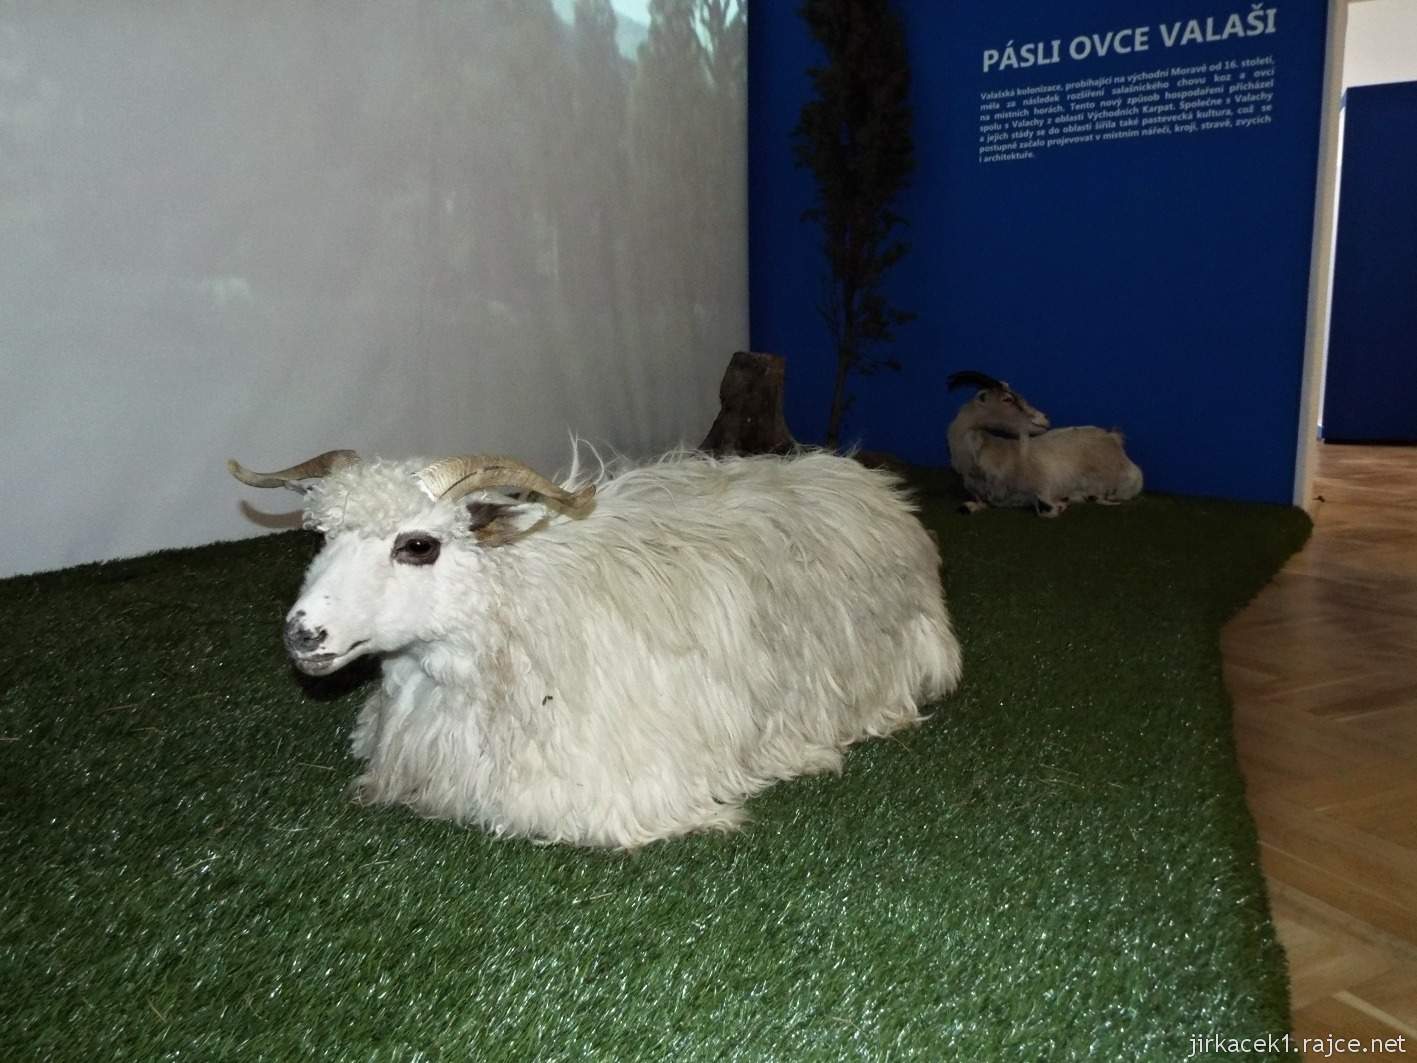 Vsetín - zámek 19 - muzeum - etnografická expozice Pásli ovce Valaši